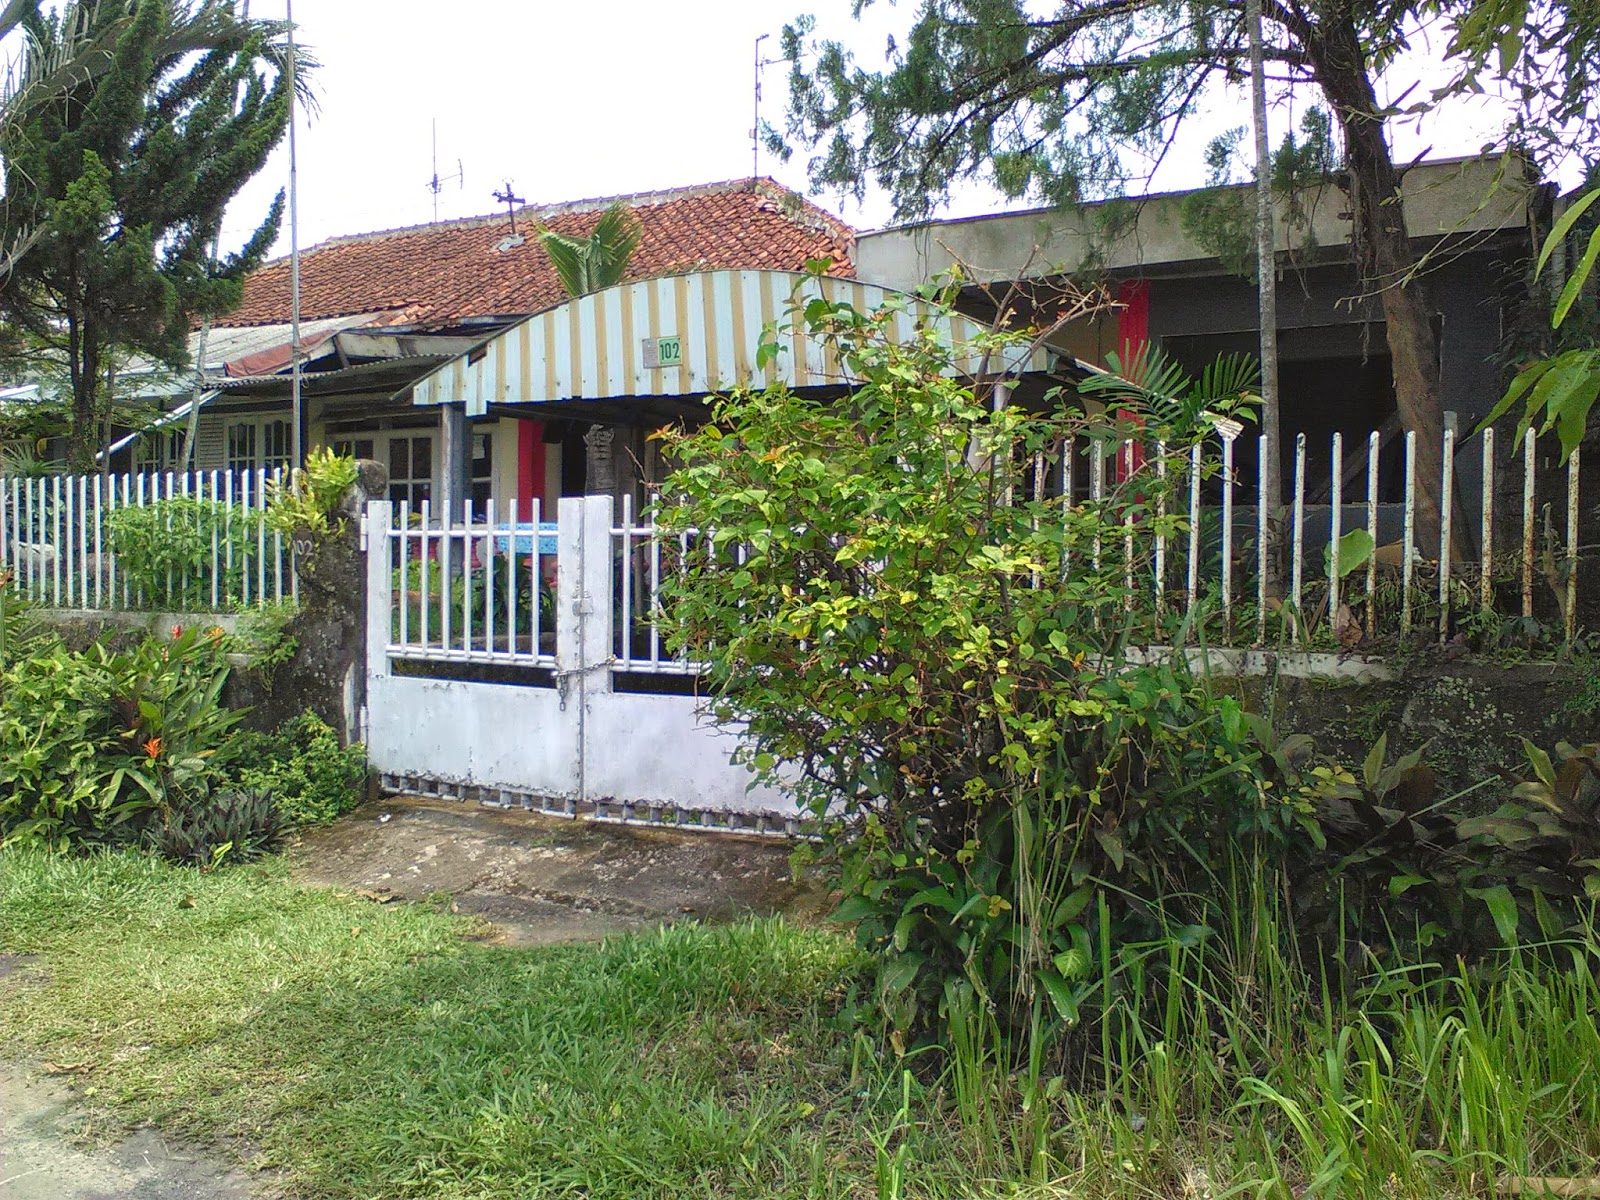  Rumah  2nd Dijual  Rumah  Di  Sempur Bogor  Kota 